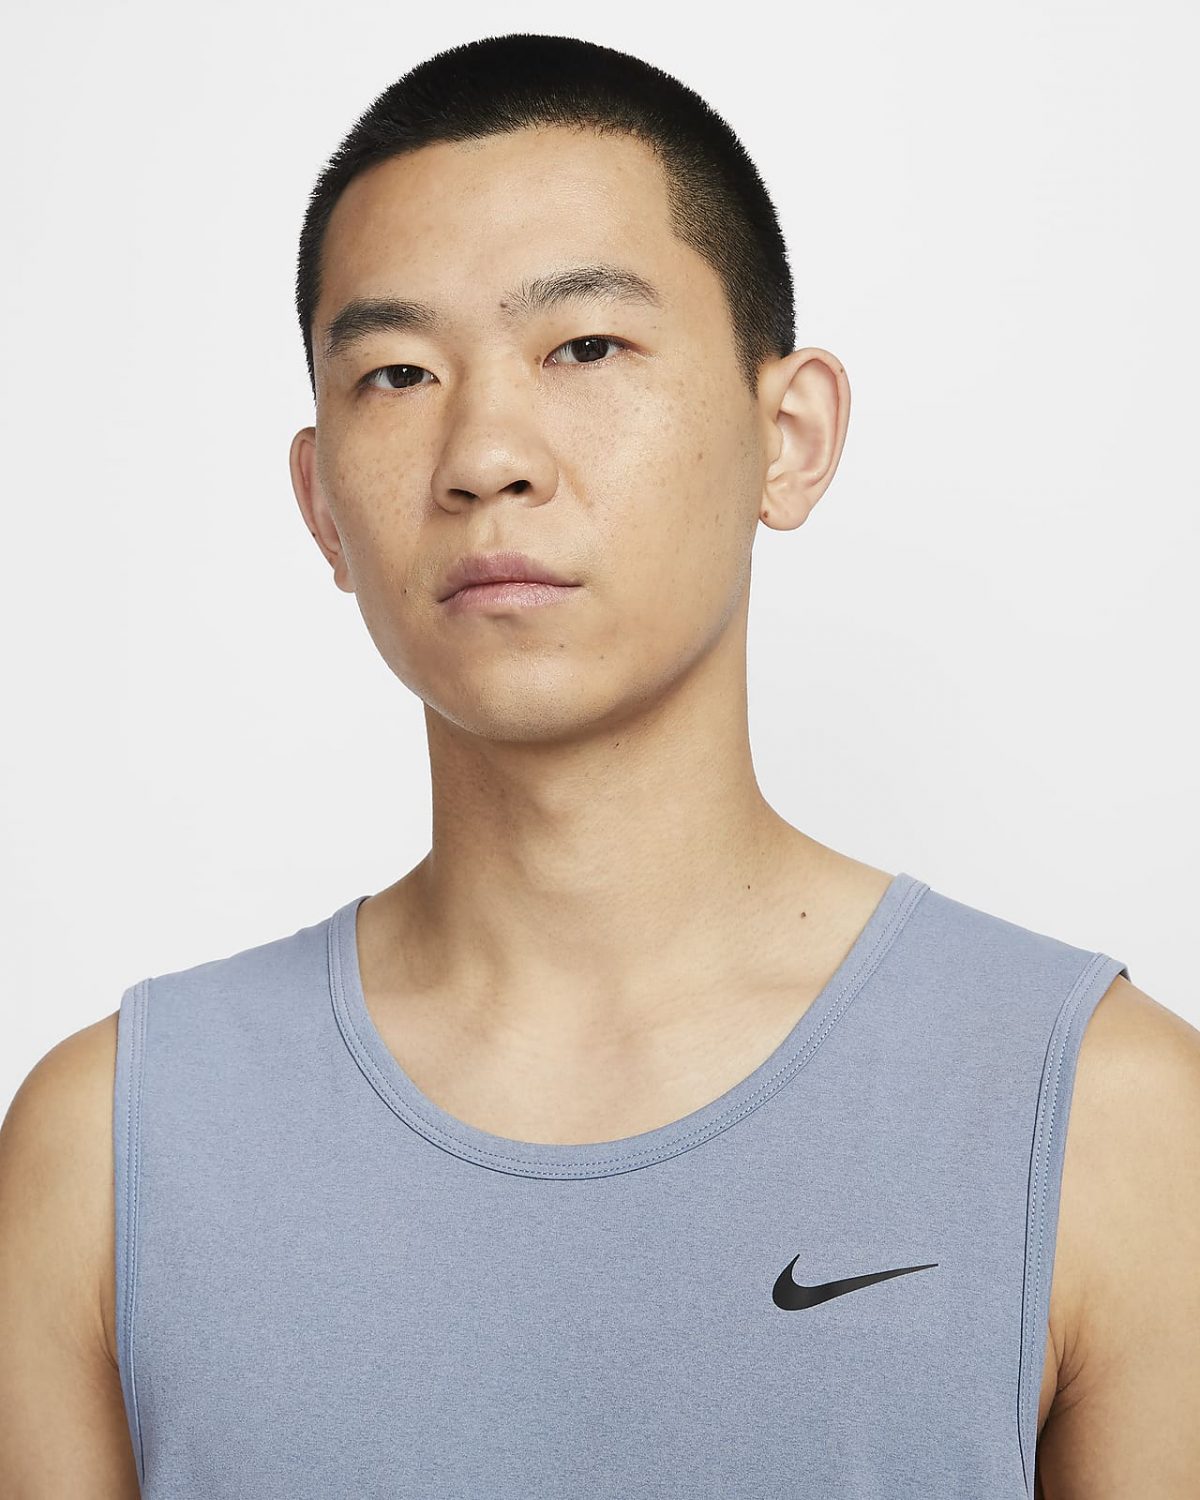 Мужская спортивная одежда Nike Dri-FIT Hyverse